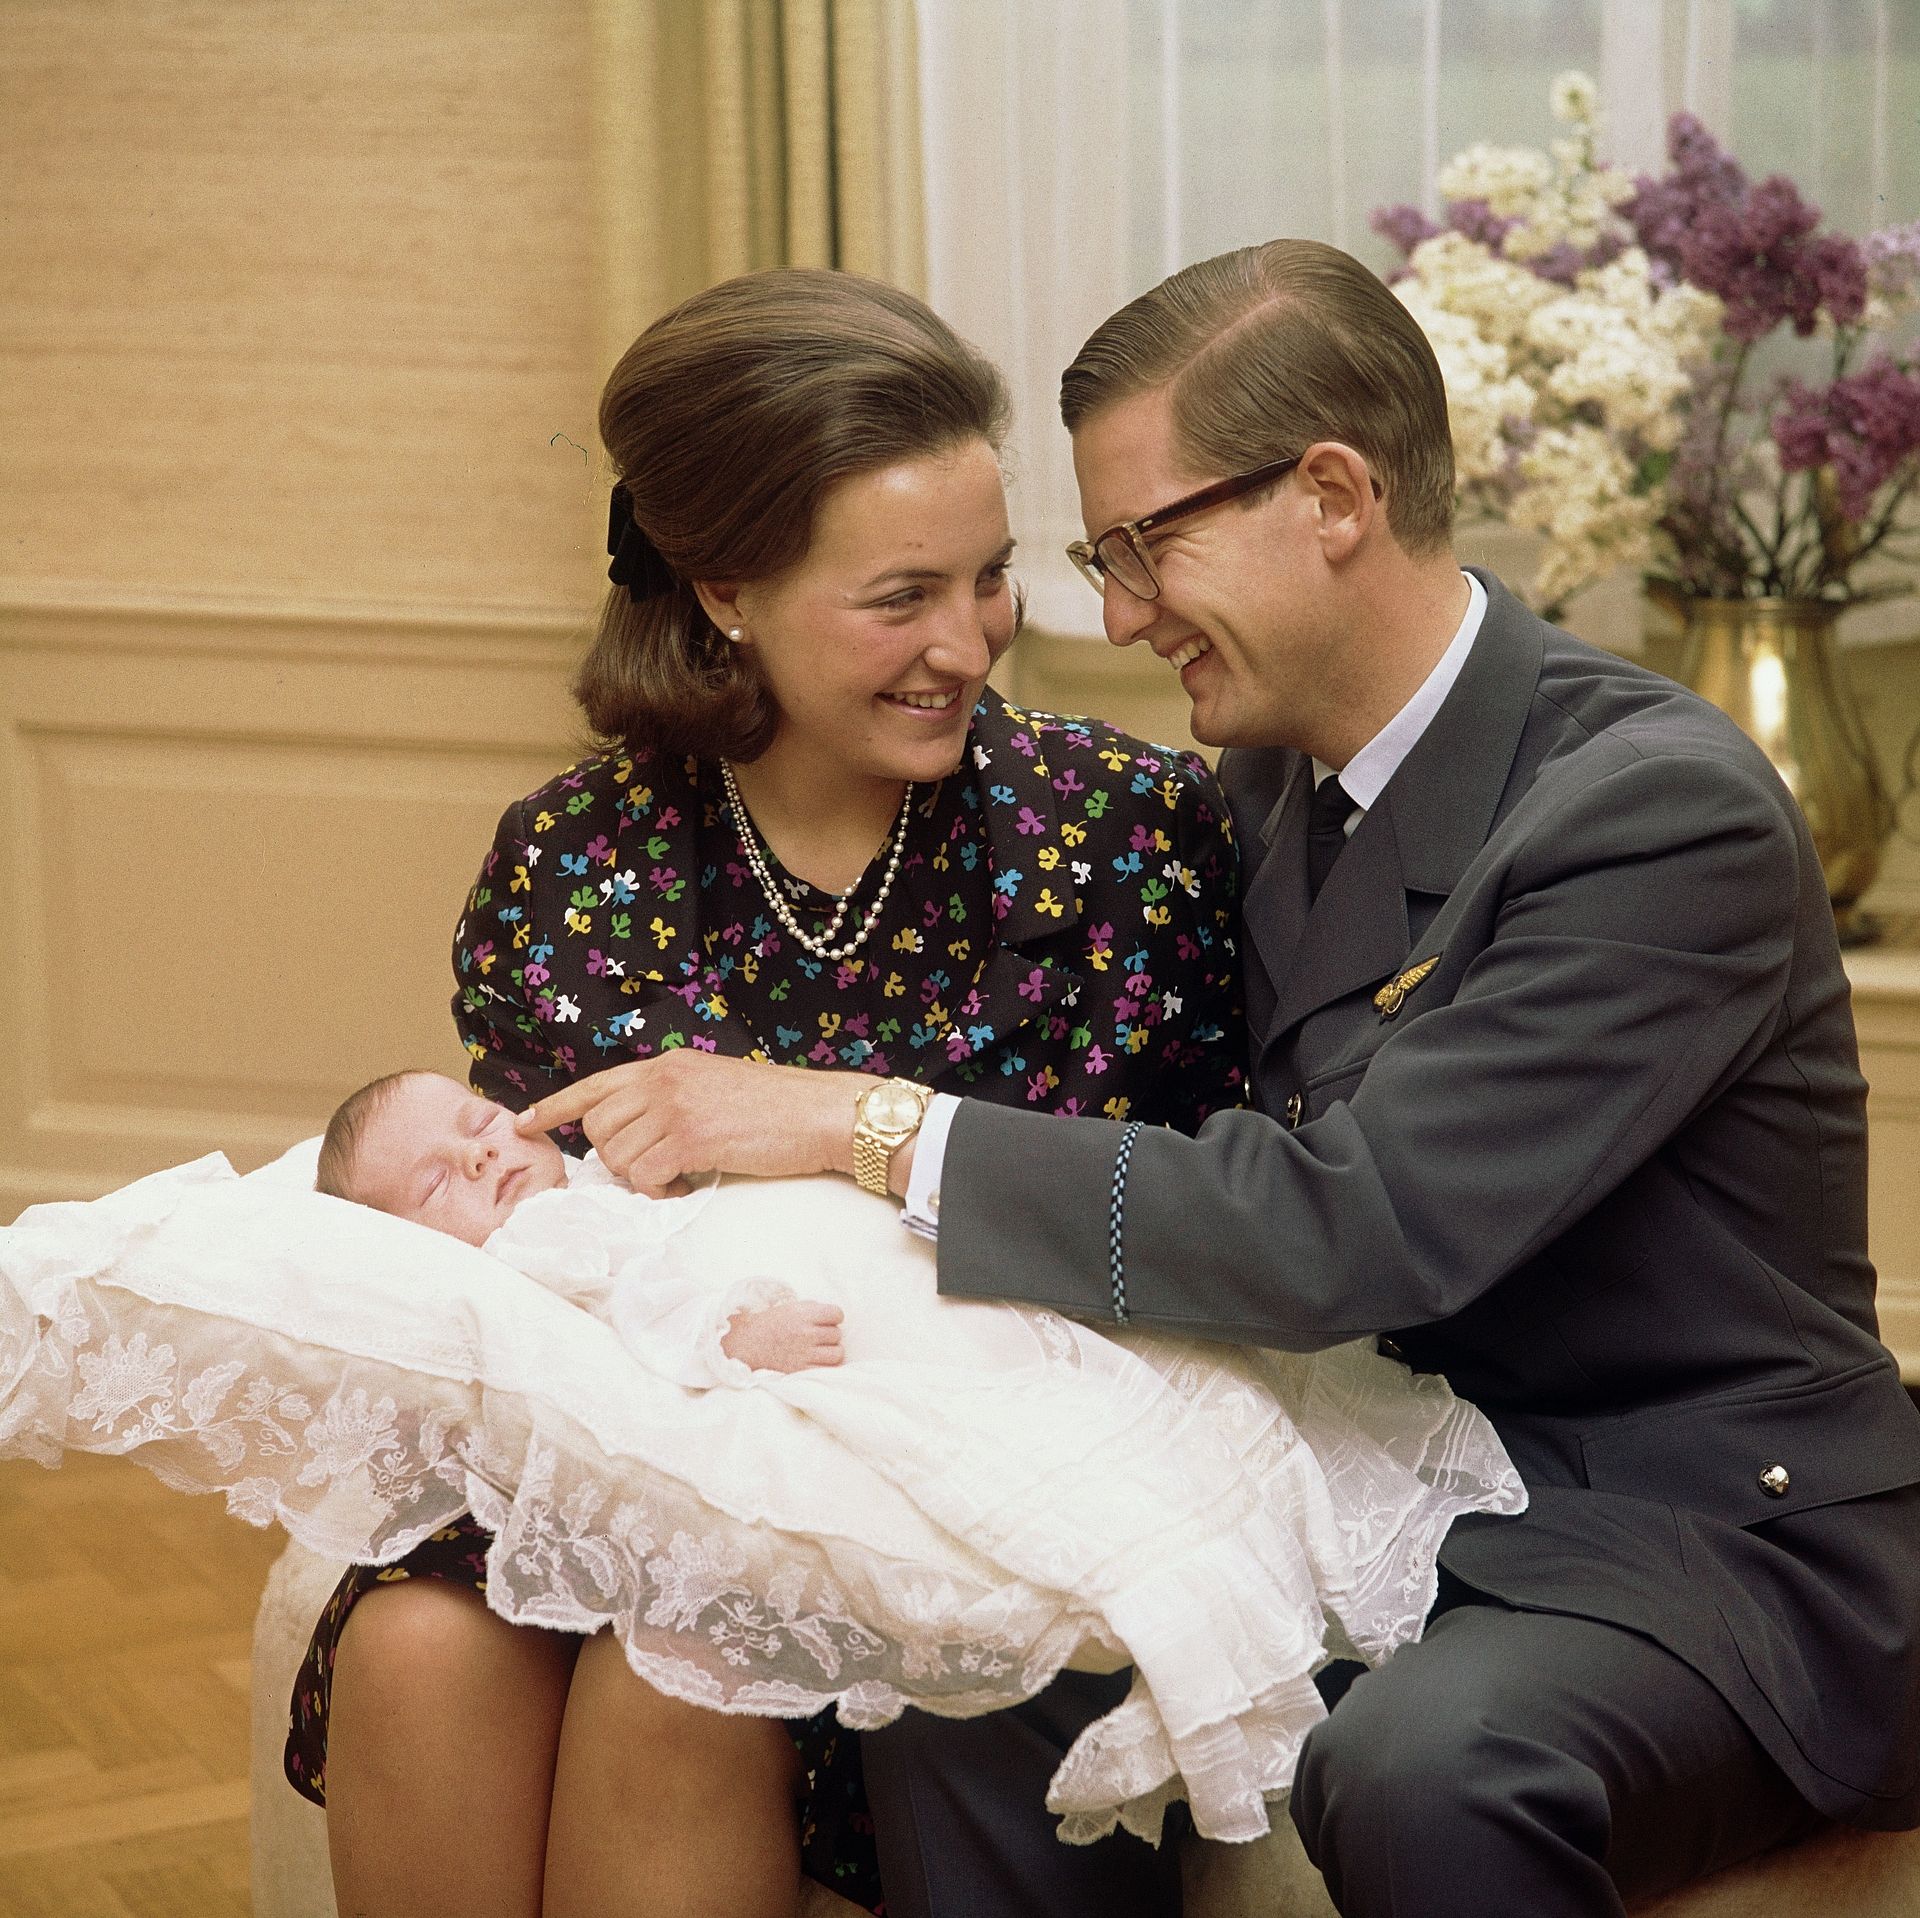 De kersverse ouders Pieter en Margriet met hun pasgeboren zoon prins Maurits, 1968.